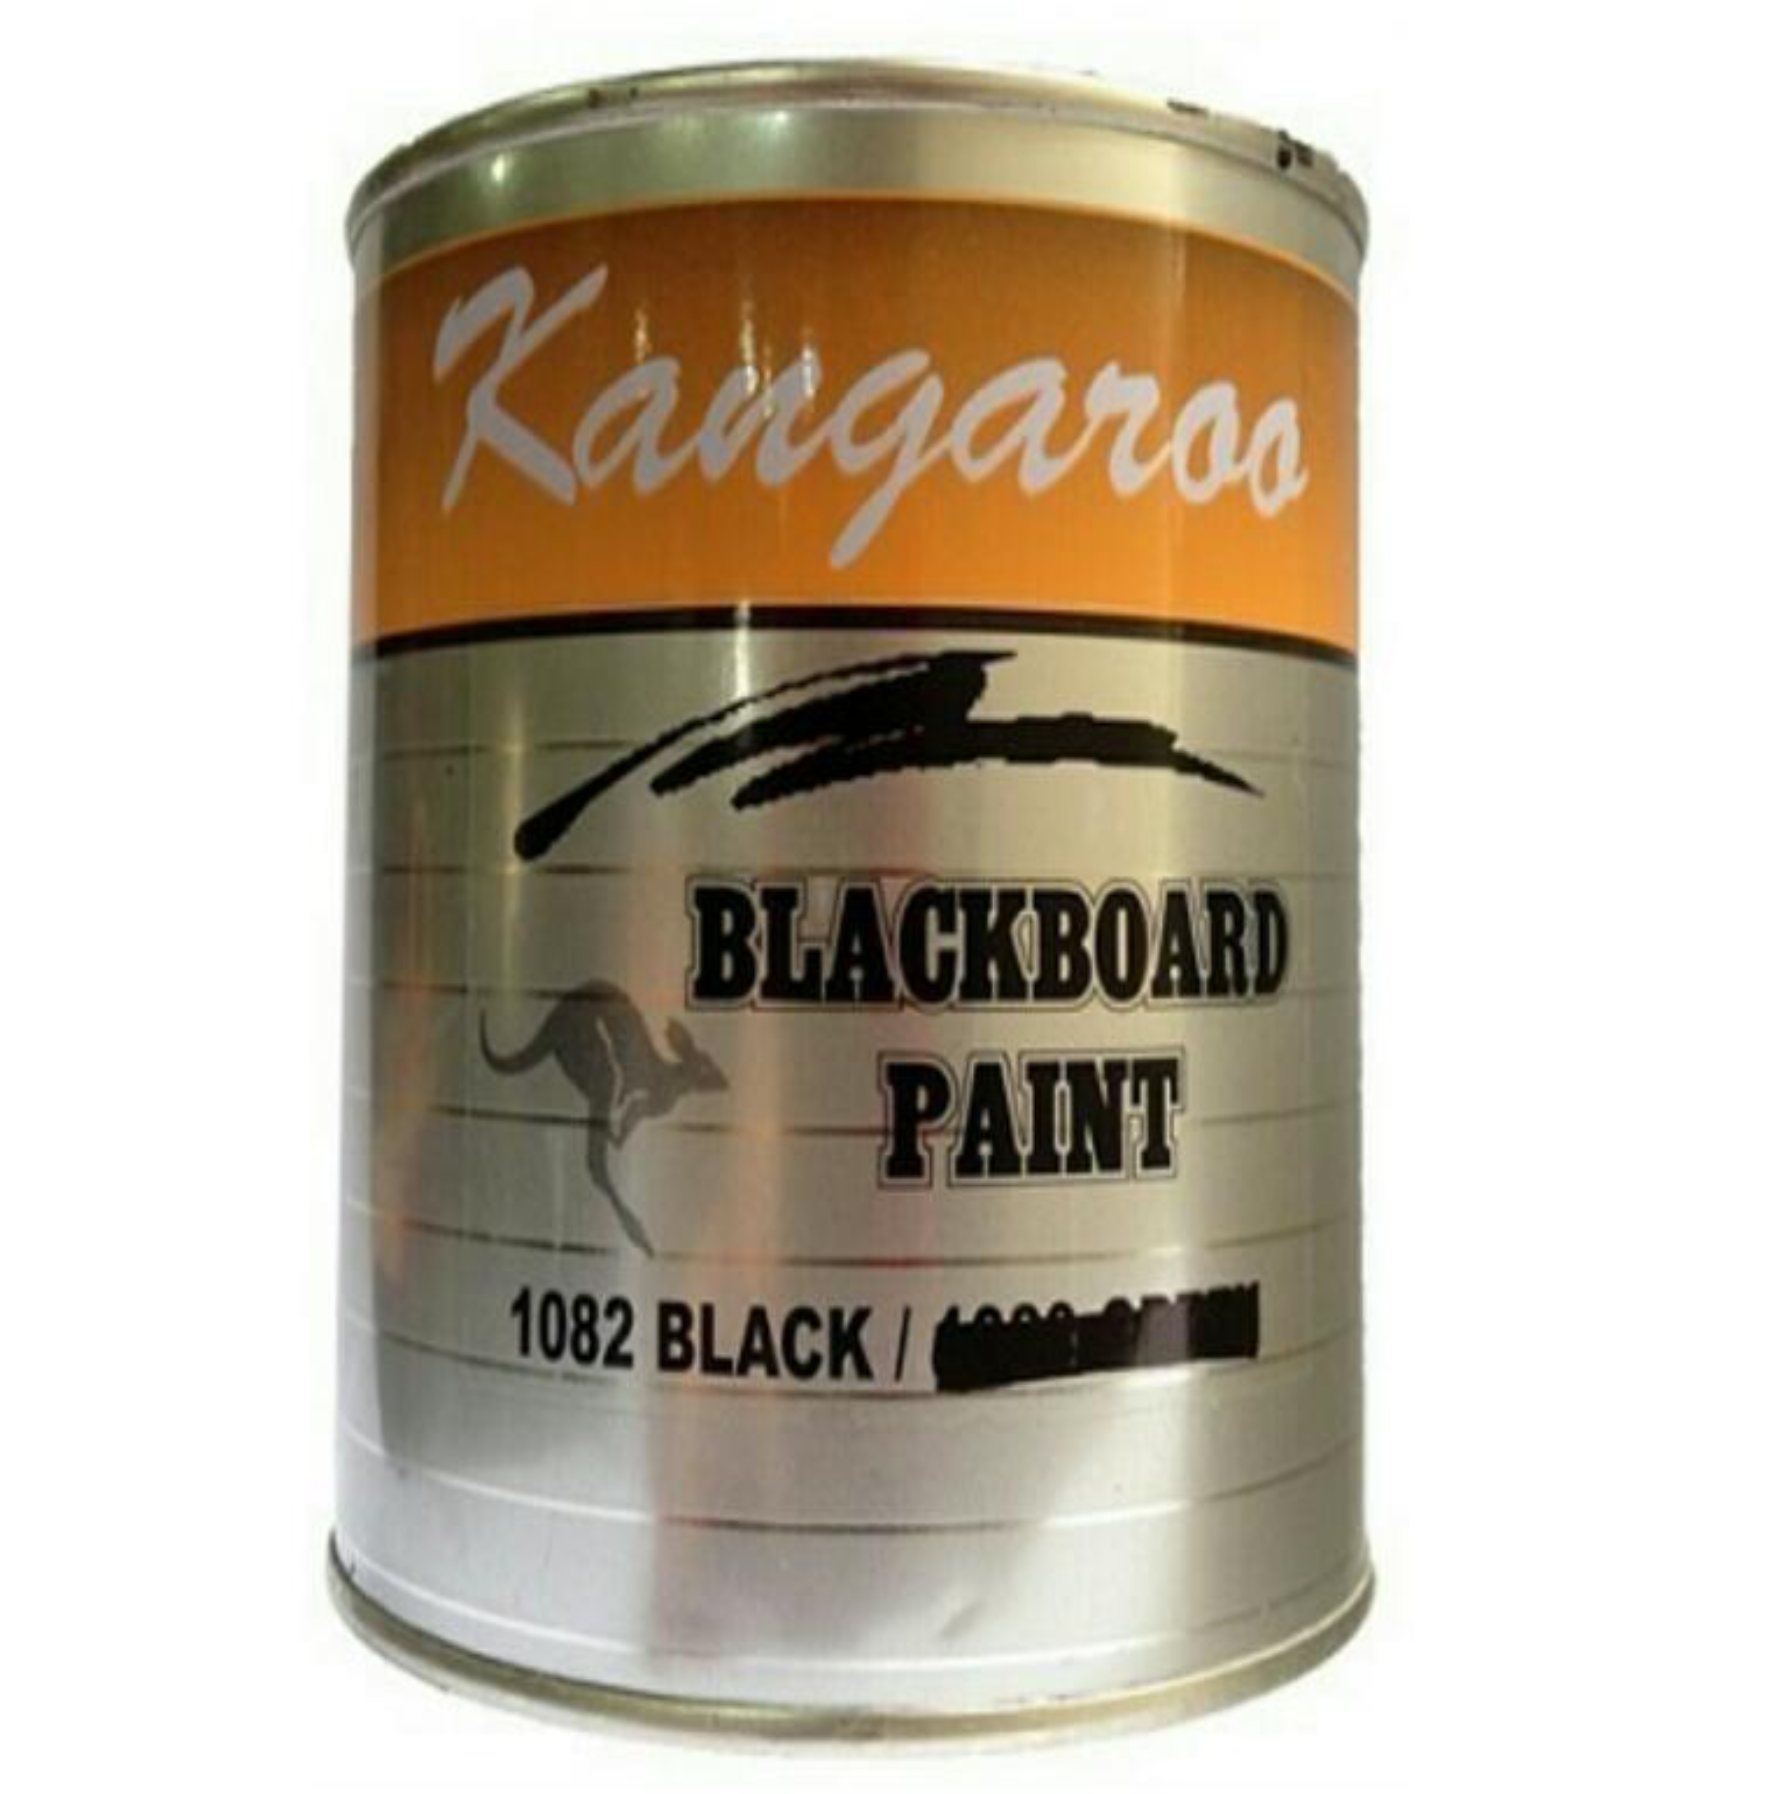 Kangaroo BLACKBOARD PAINT 5L 1082 BLACK